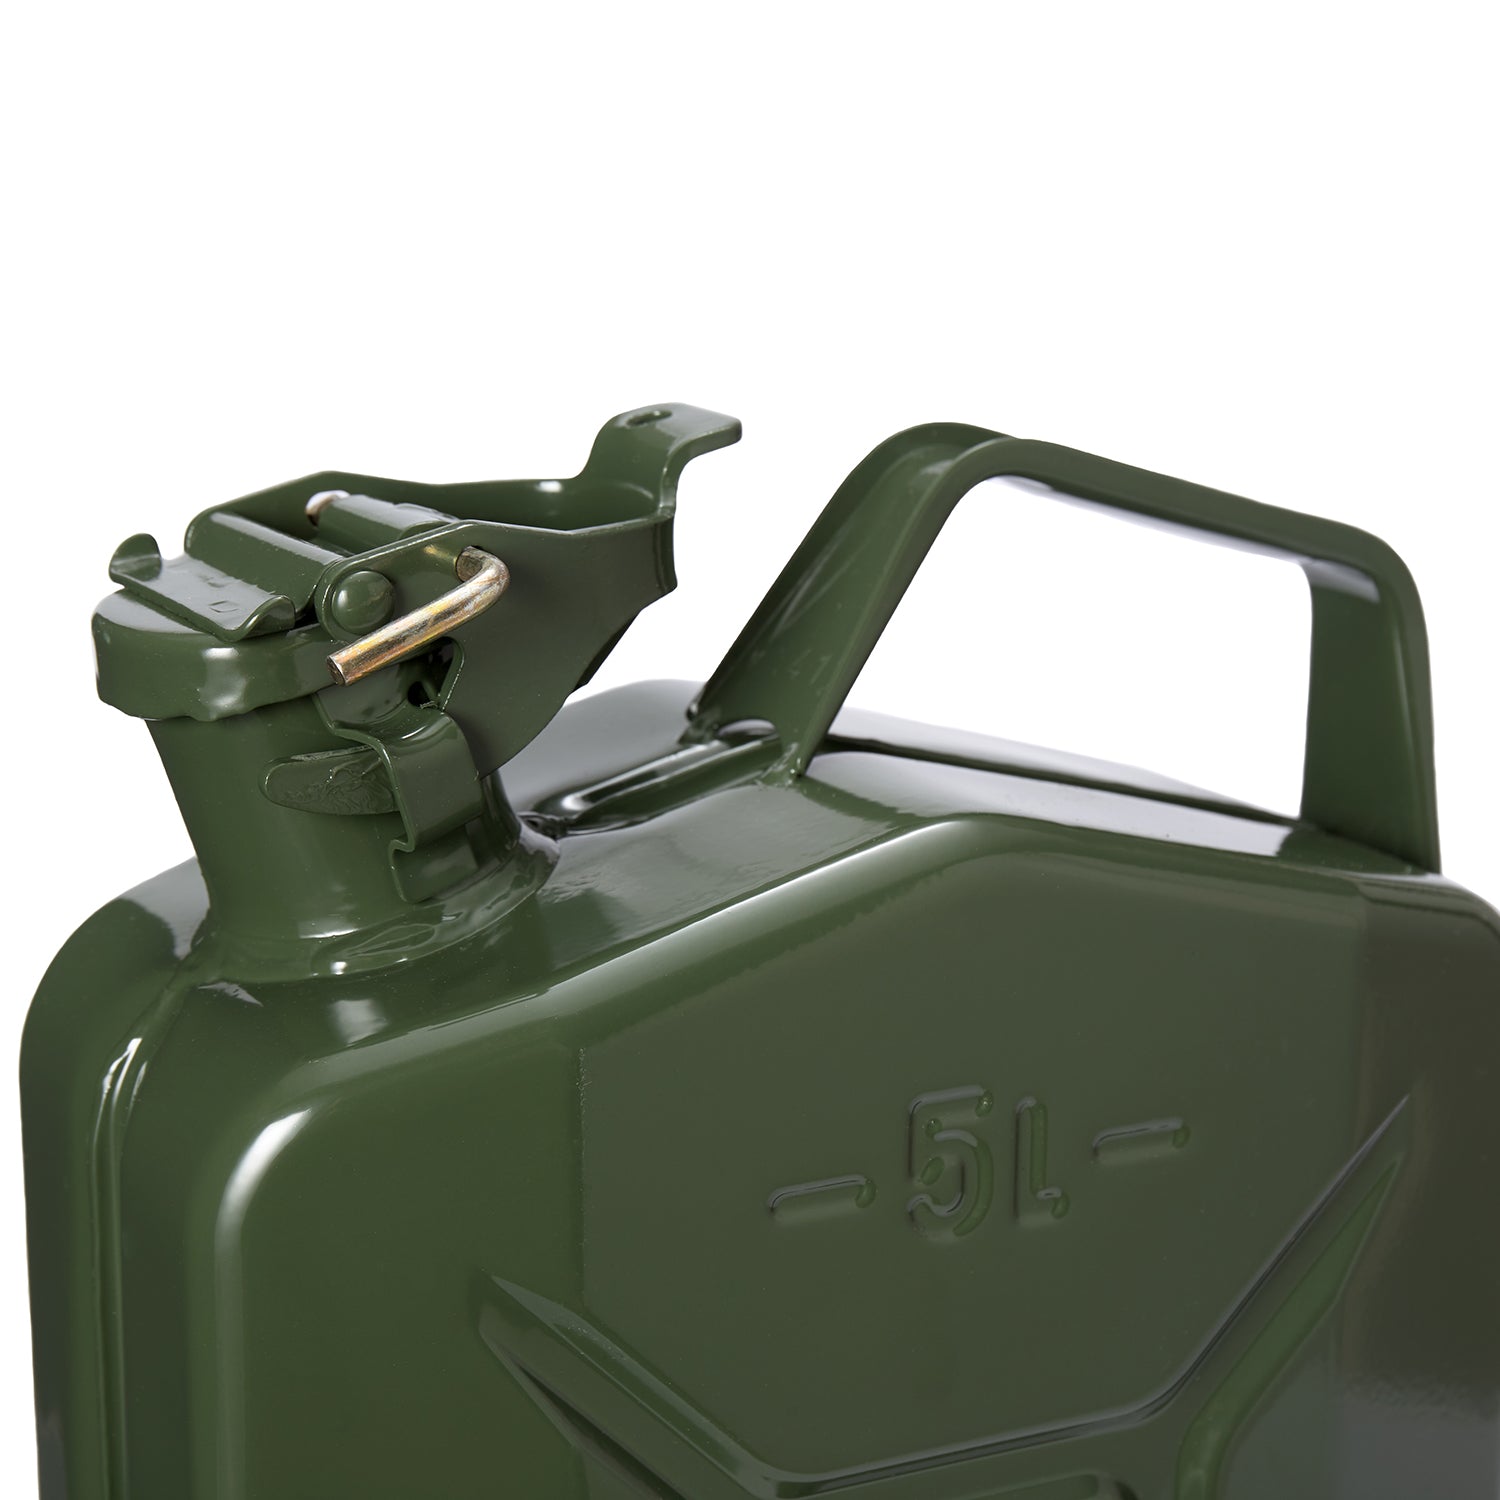 Metall Benzinkanister Kraftstoffkanister olivgrün 5 Liter